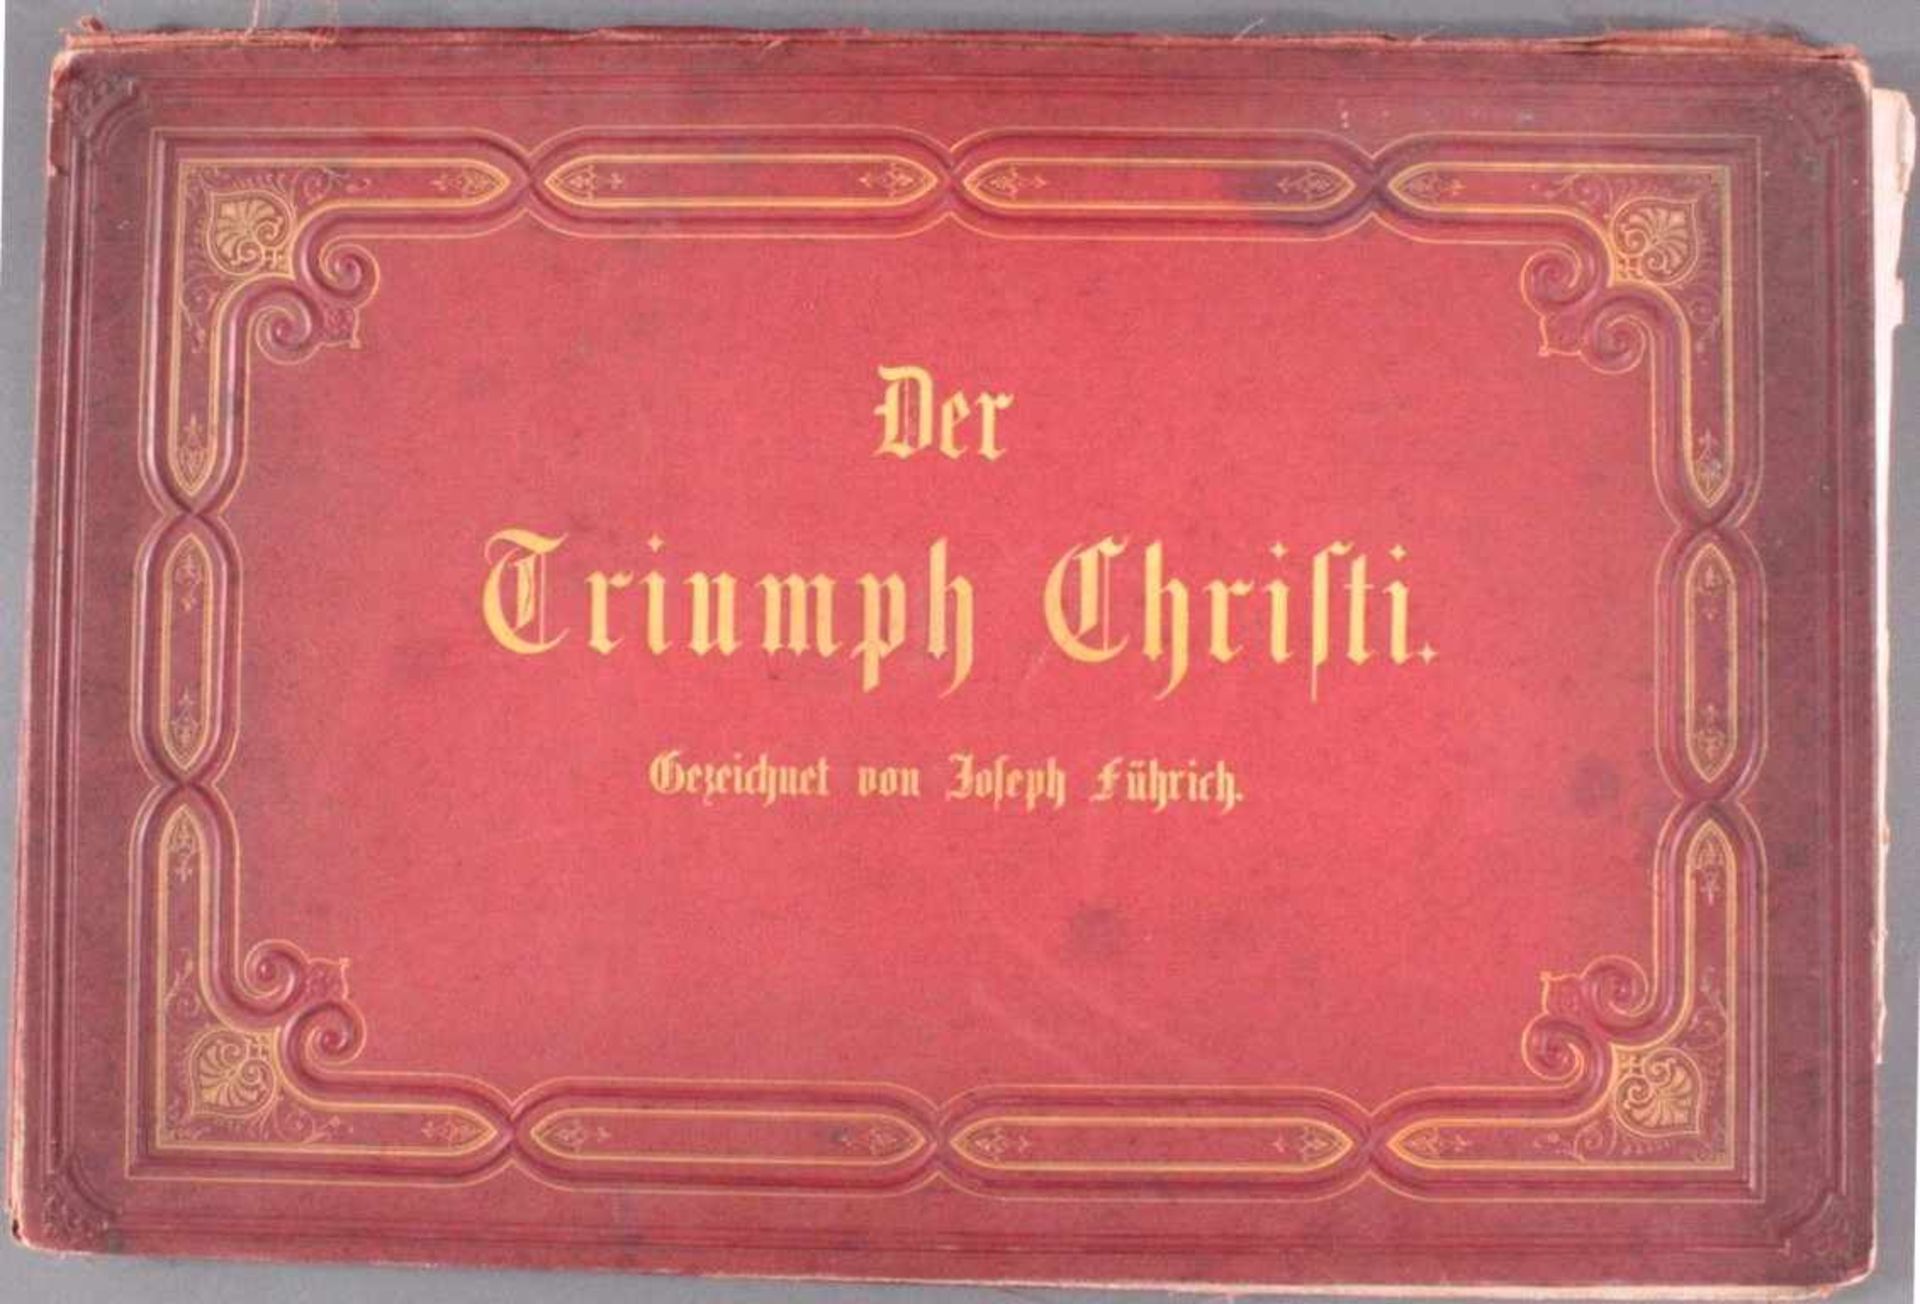 Der Triumph Christi von Joseph Führich, Ratisbon 185611 Blätter, davon 10 enthalten, gez. von Joseph